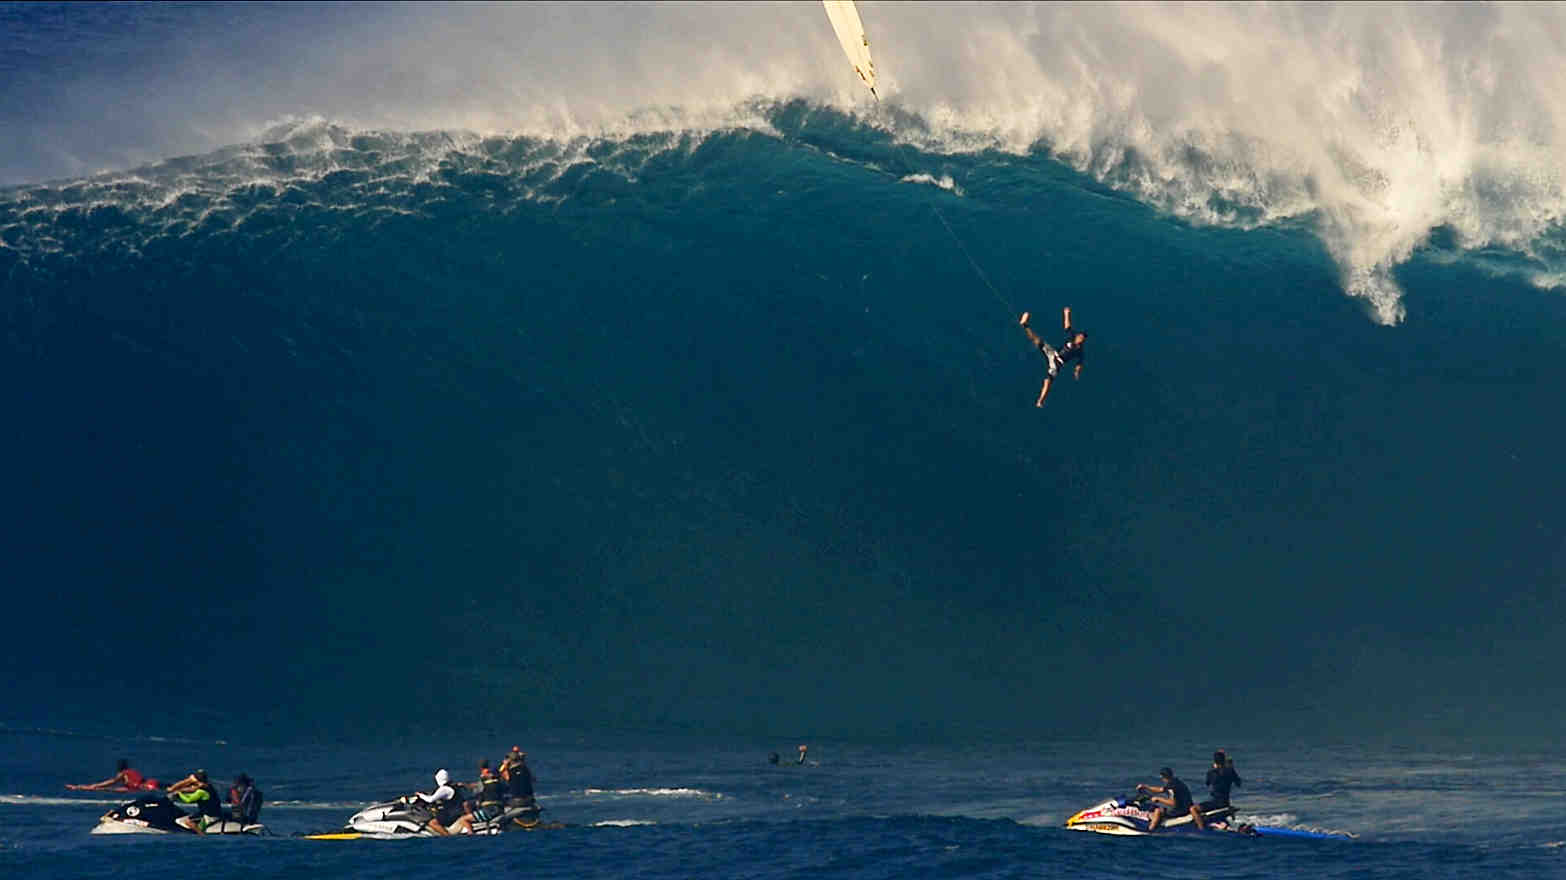 Has someone surfed a tsunami?